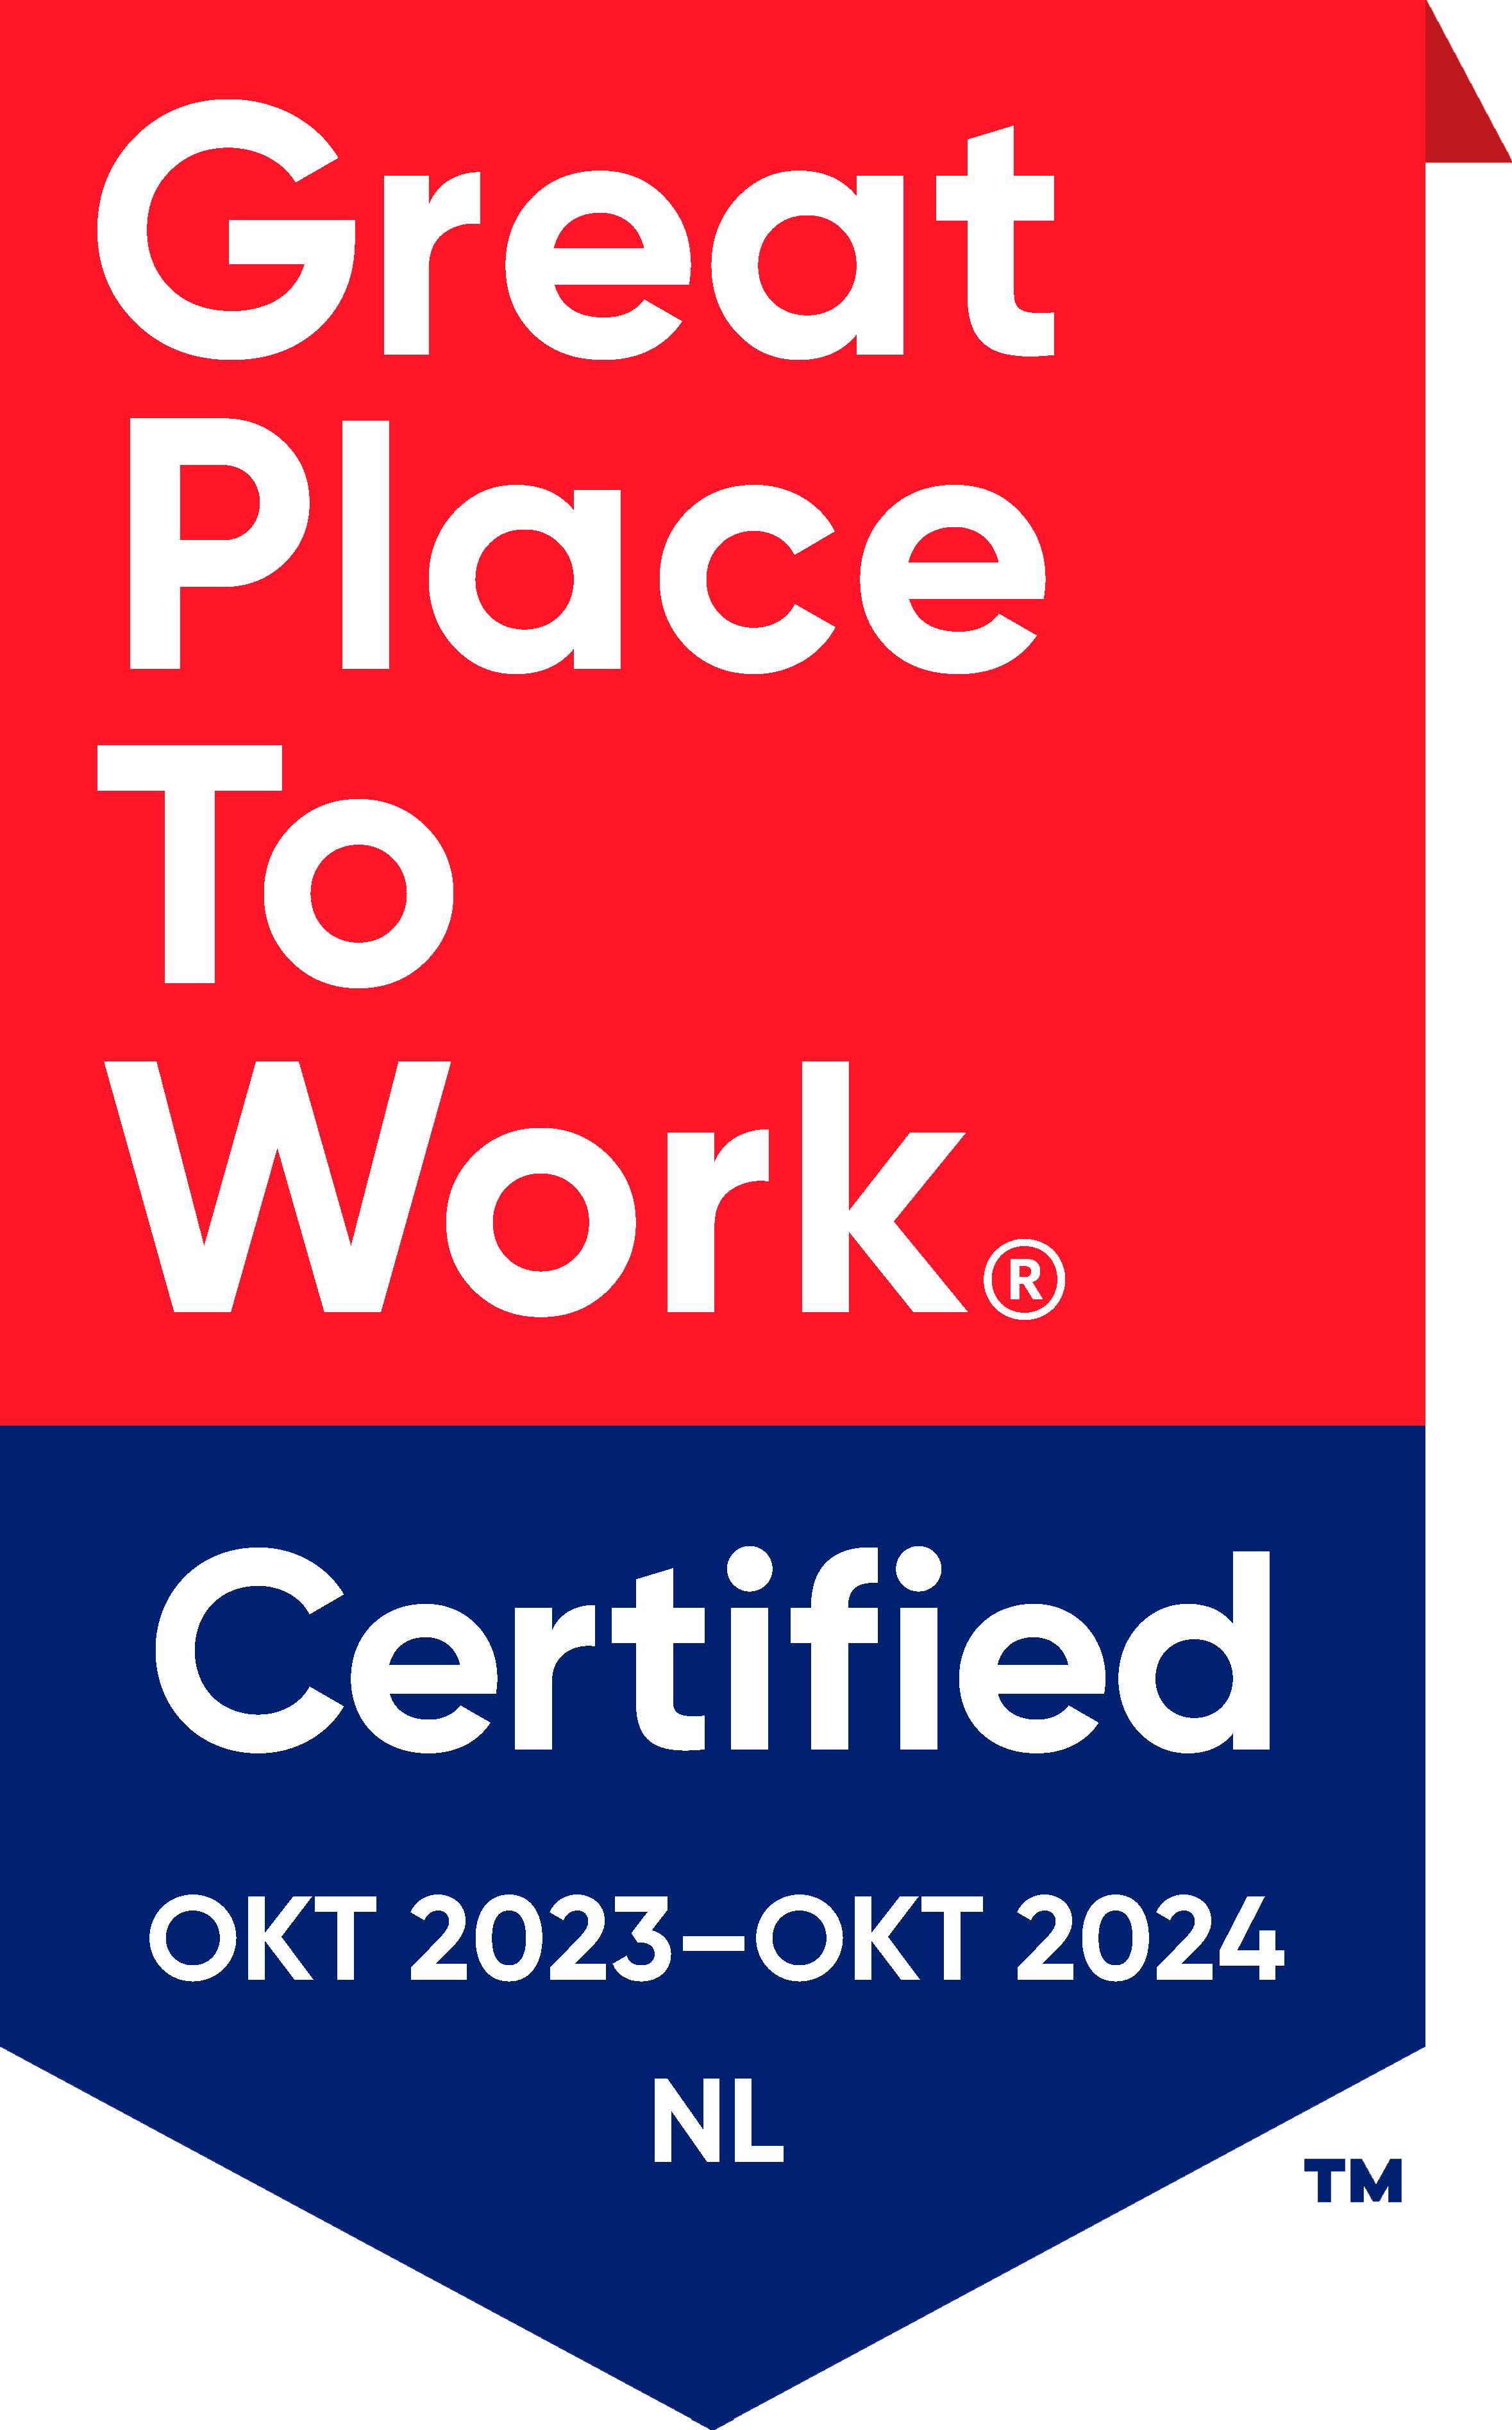 Certified_oktober 2023-24 (met ezelsoor)